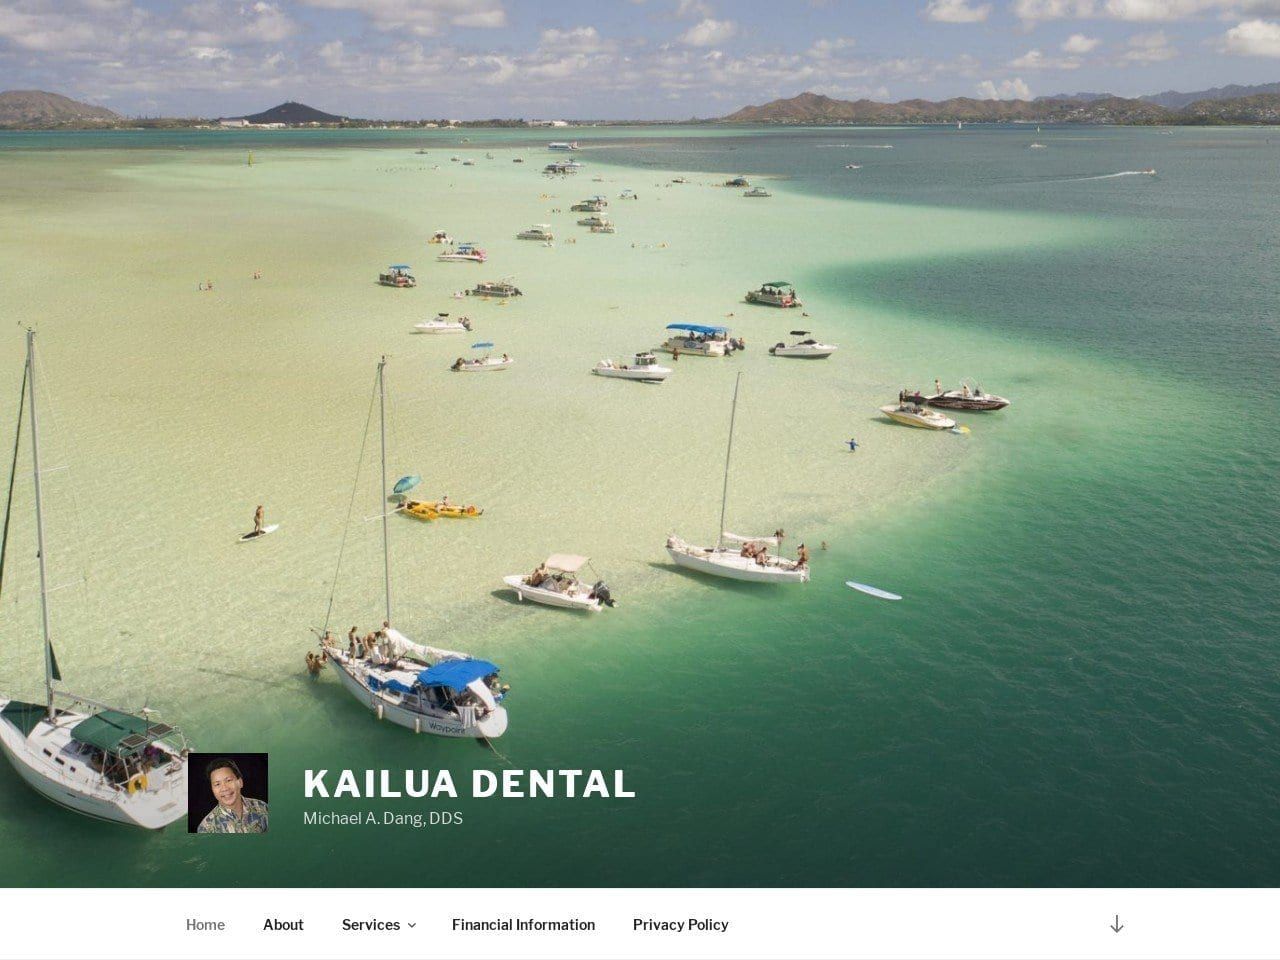 Kailua Dental Website Screenshot from kailuadental.com